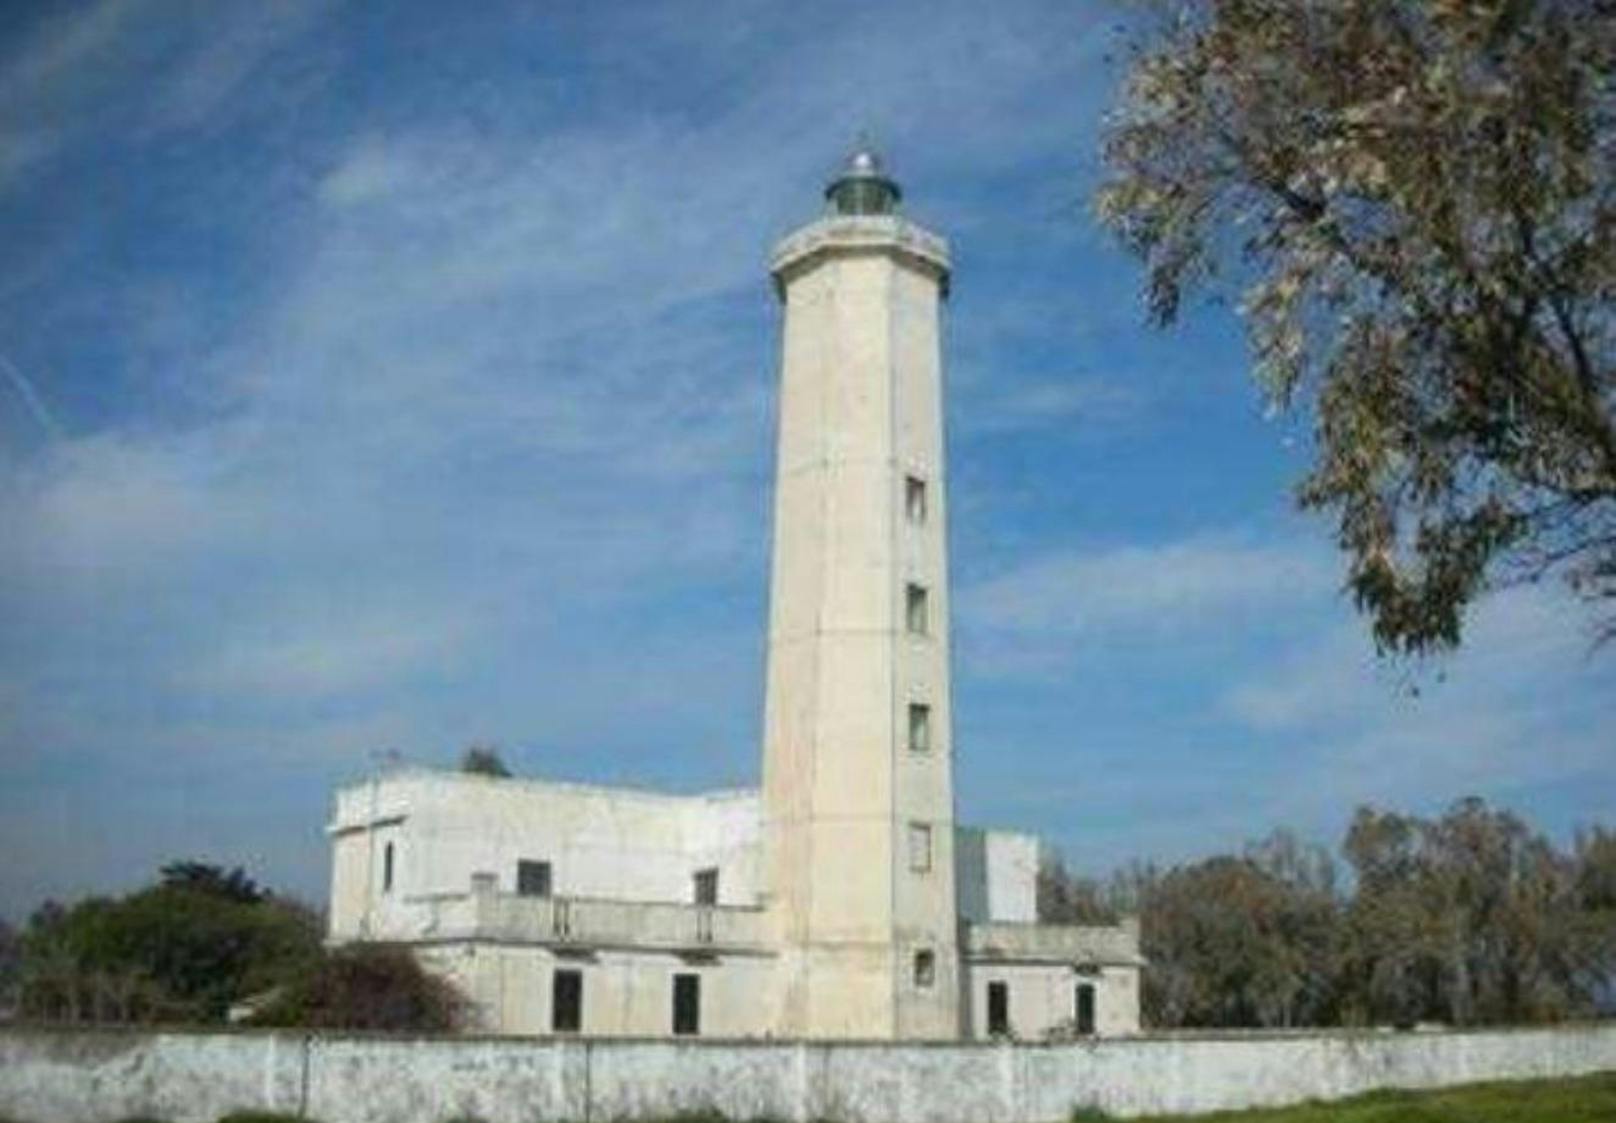 <b>Il Faro di Punta Alice</b>
Dieser Leuchtturm steht in Cirò Marina auf einem über 3000 Quadratmeter grossen Grundstück.